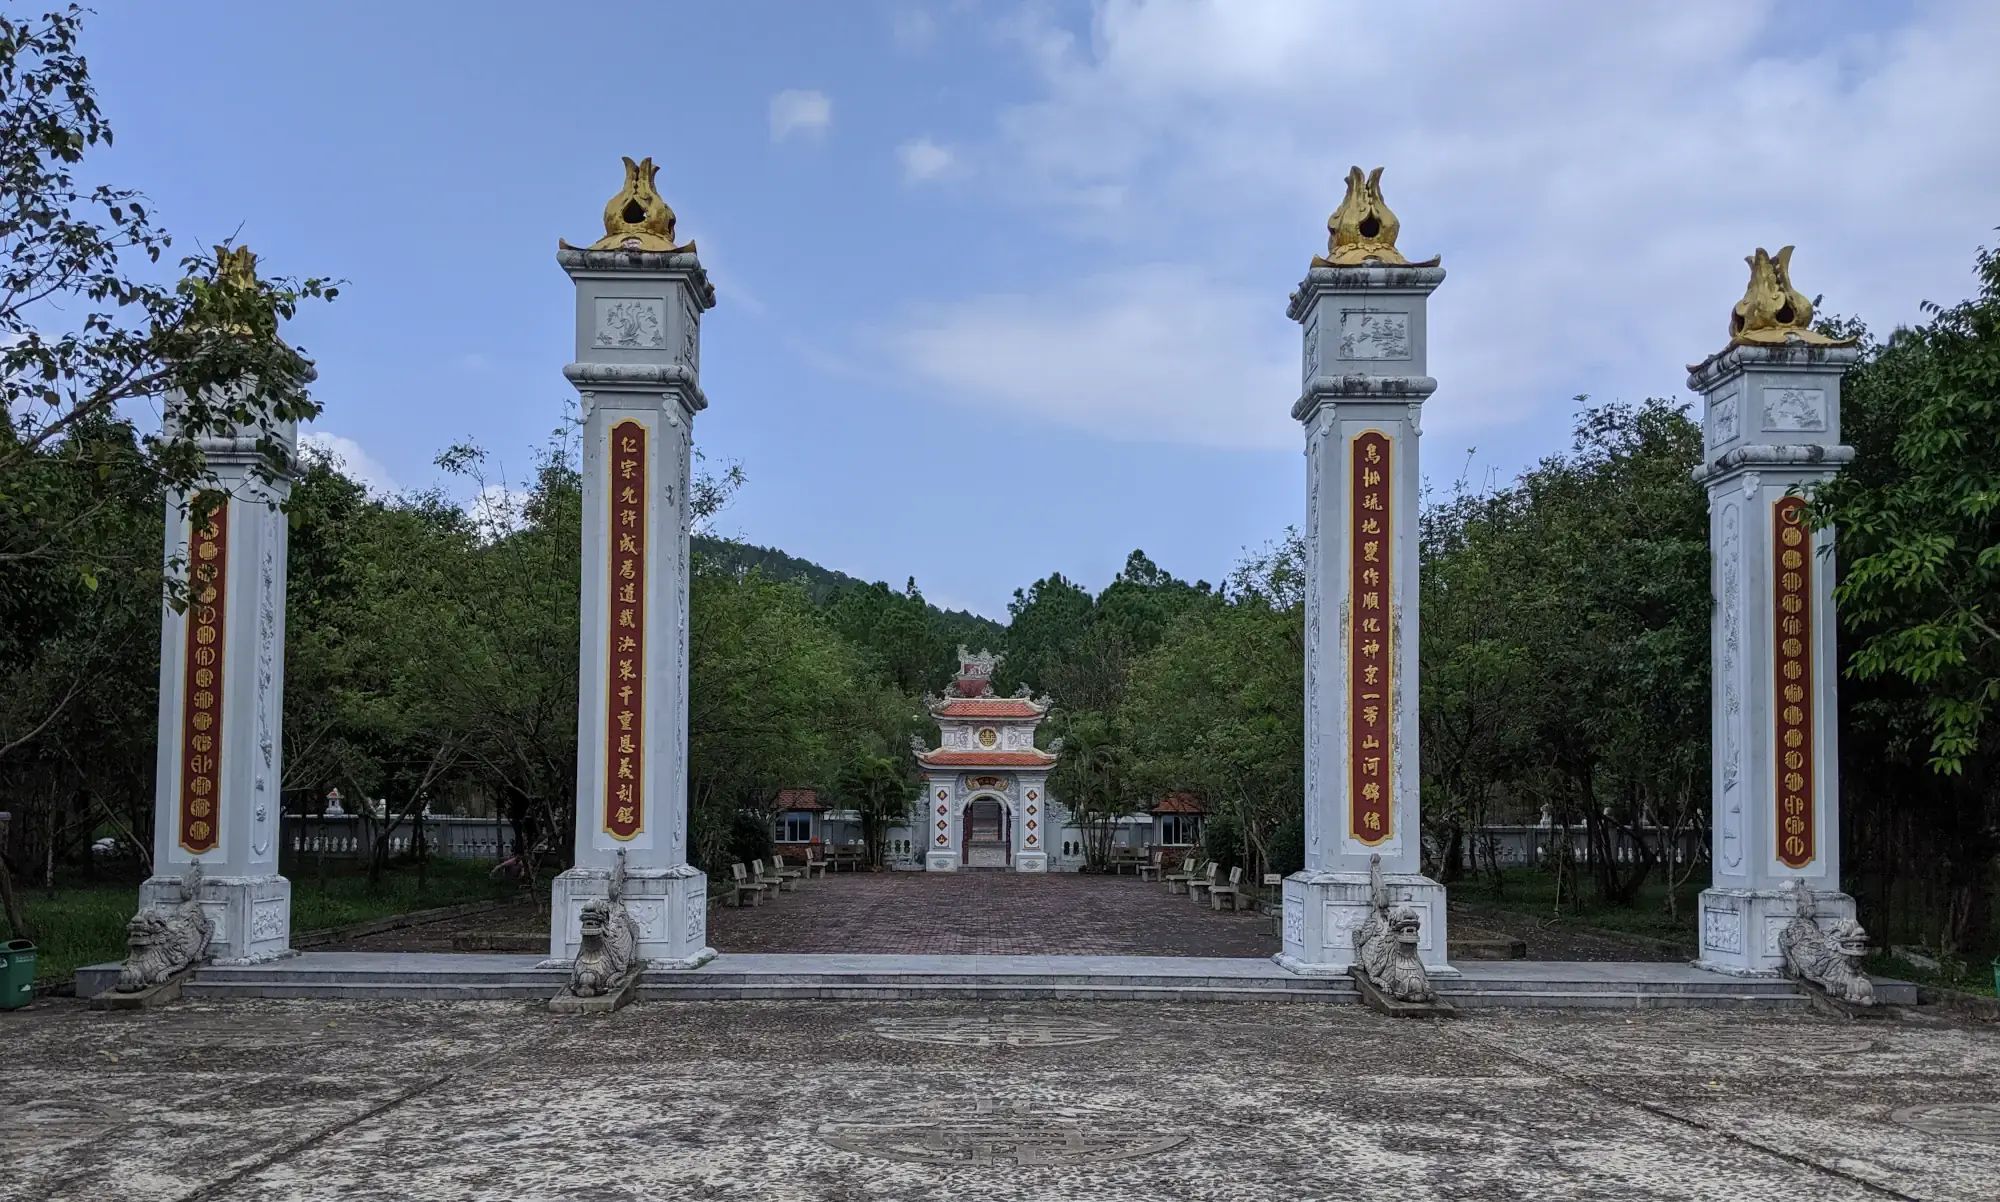 Huyen Tran Cultural Center